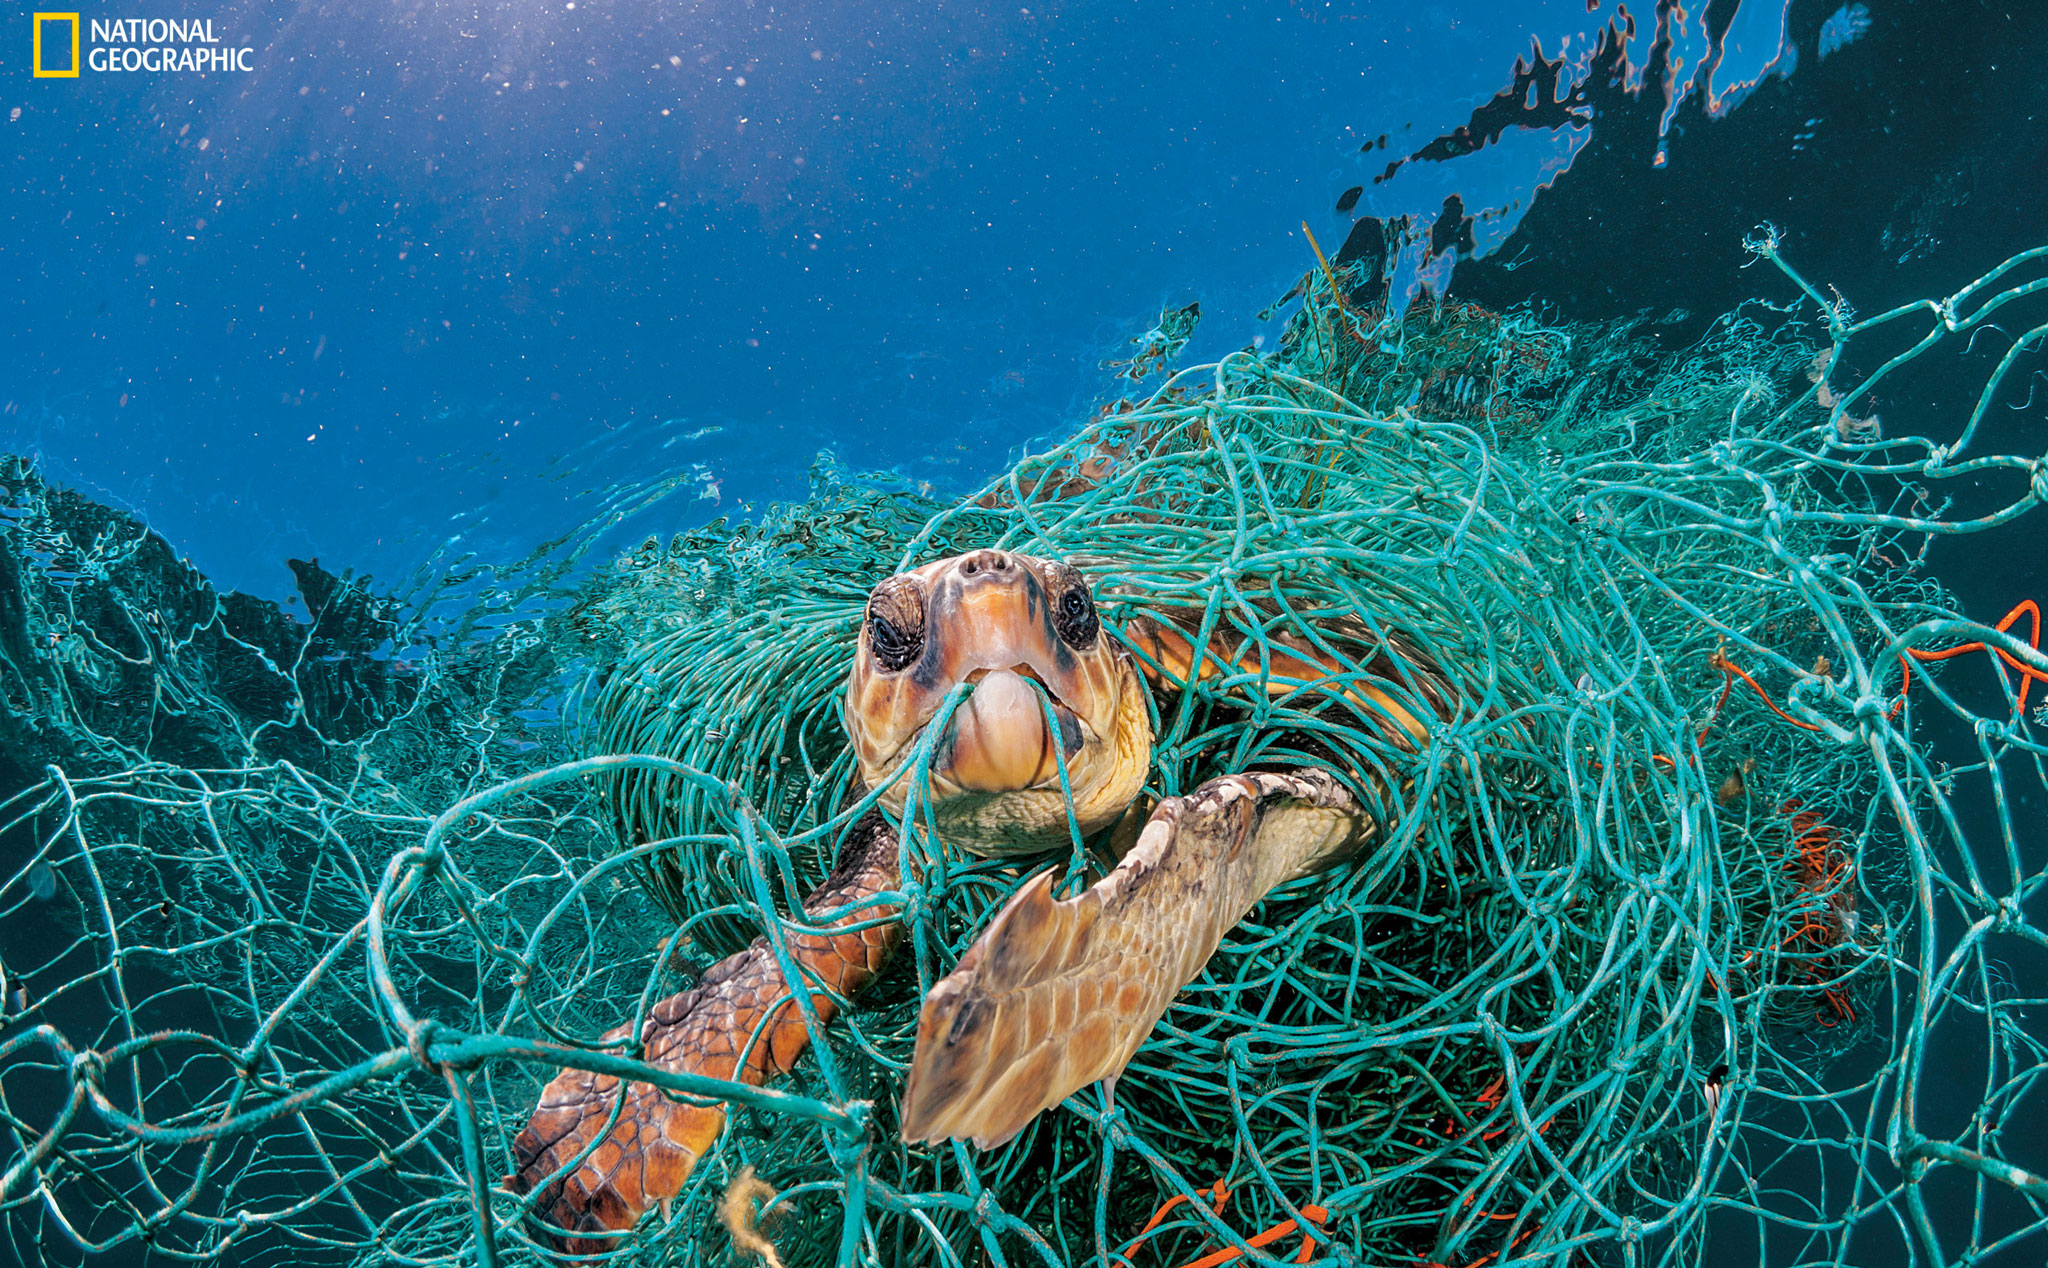 [Nghiên cứu] Bên trong ruột mỗi con rùa biển đều có chứa hạt vi nhựa